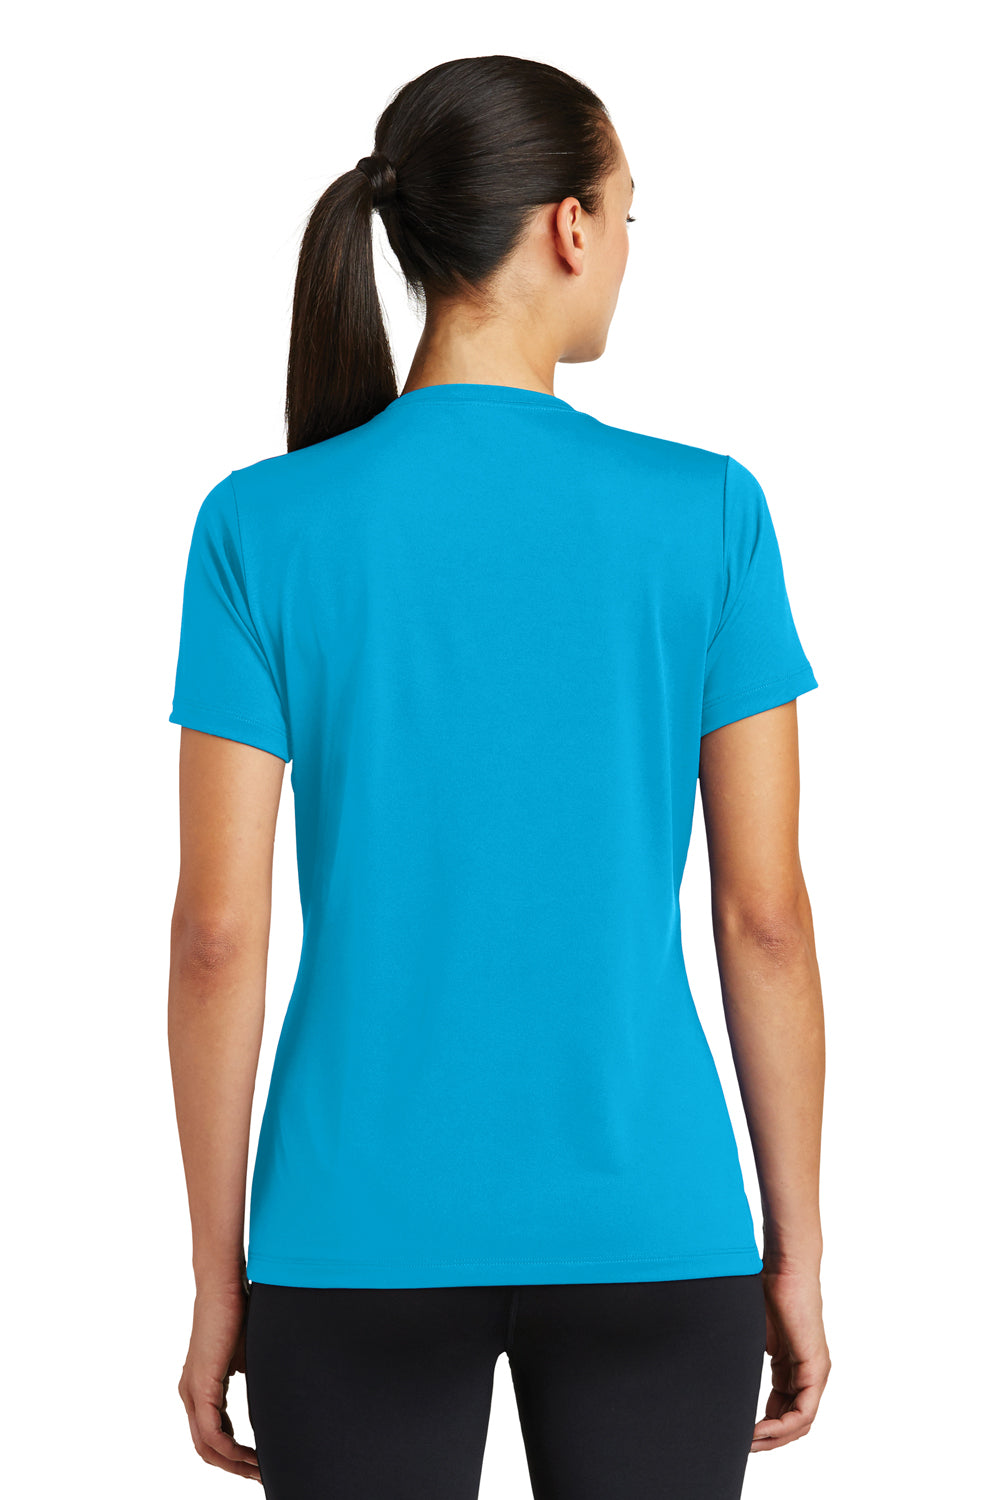 Sport-Tek LST320 Womens Tough Moisture Wicking Short Sleeve Crewneck T-Shirt Atomic Blue Back